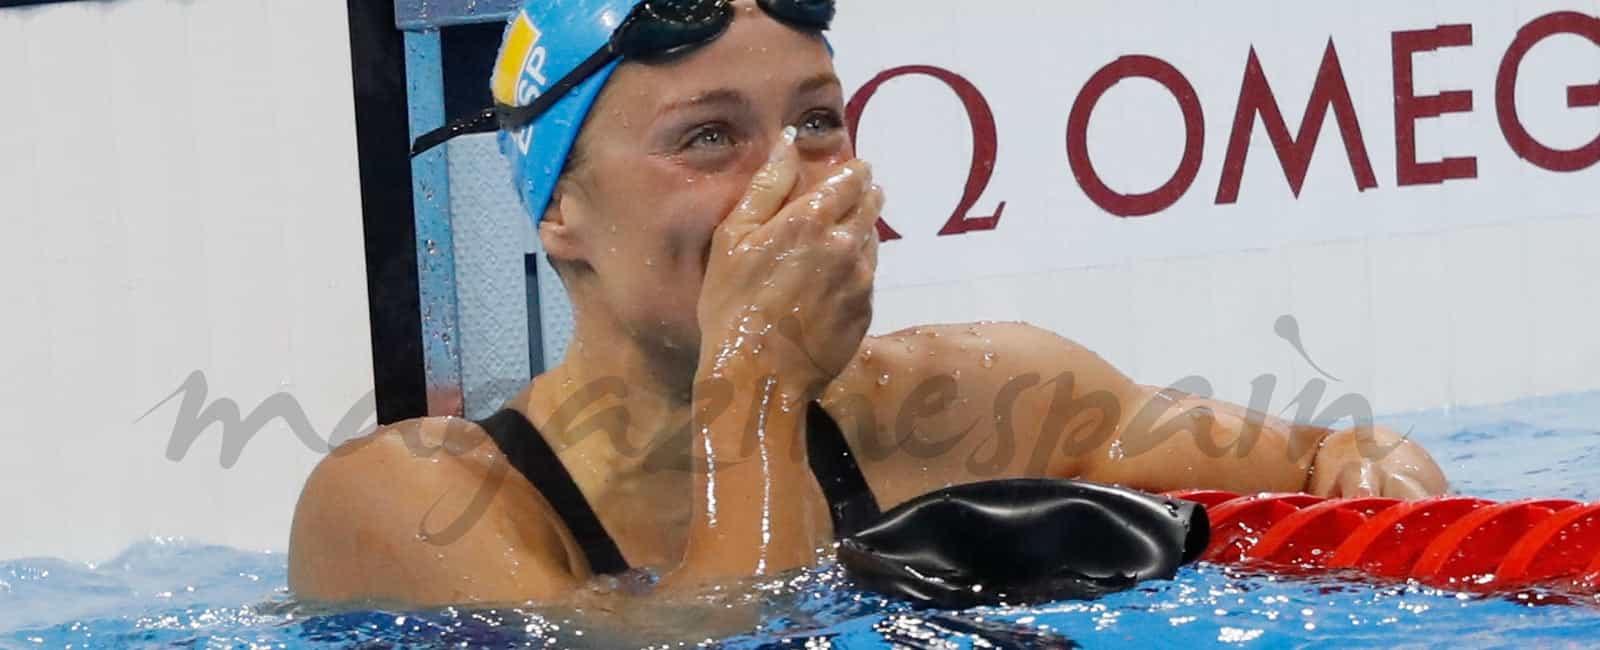 Mireia Belmonte gana su primer oro olímpico en Río 2016